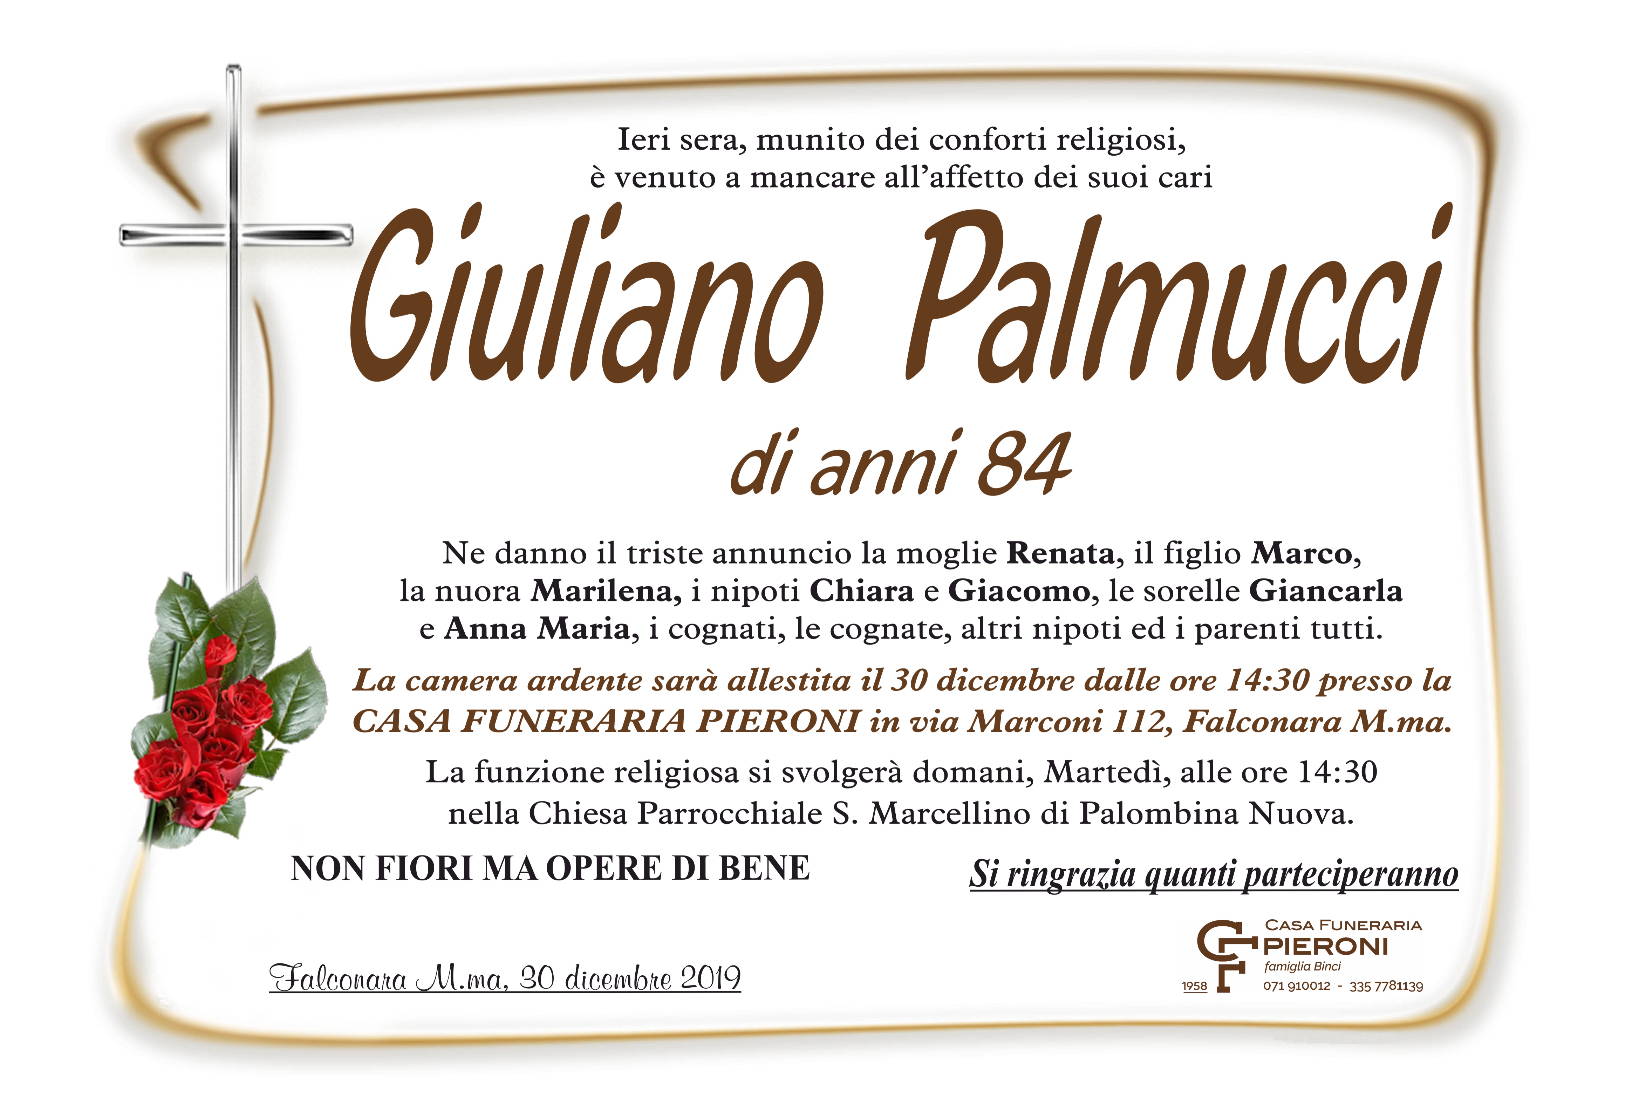 Giuliano Palmucci